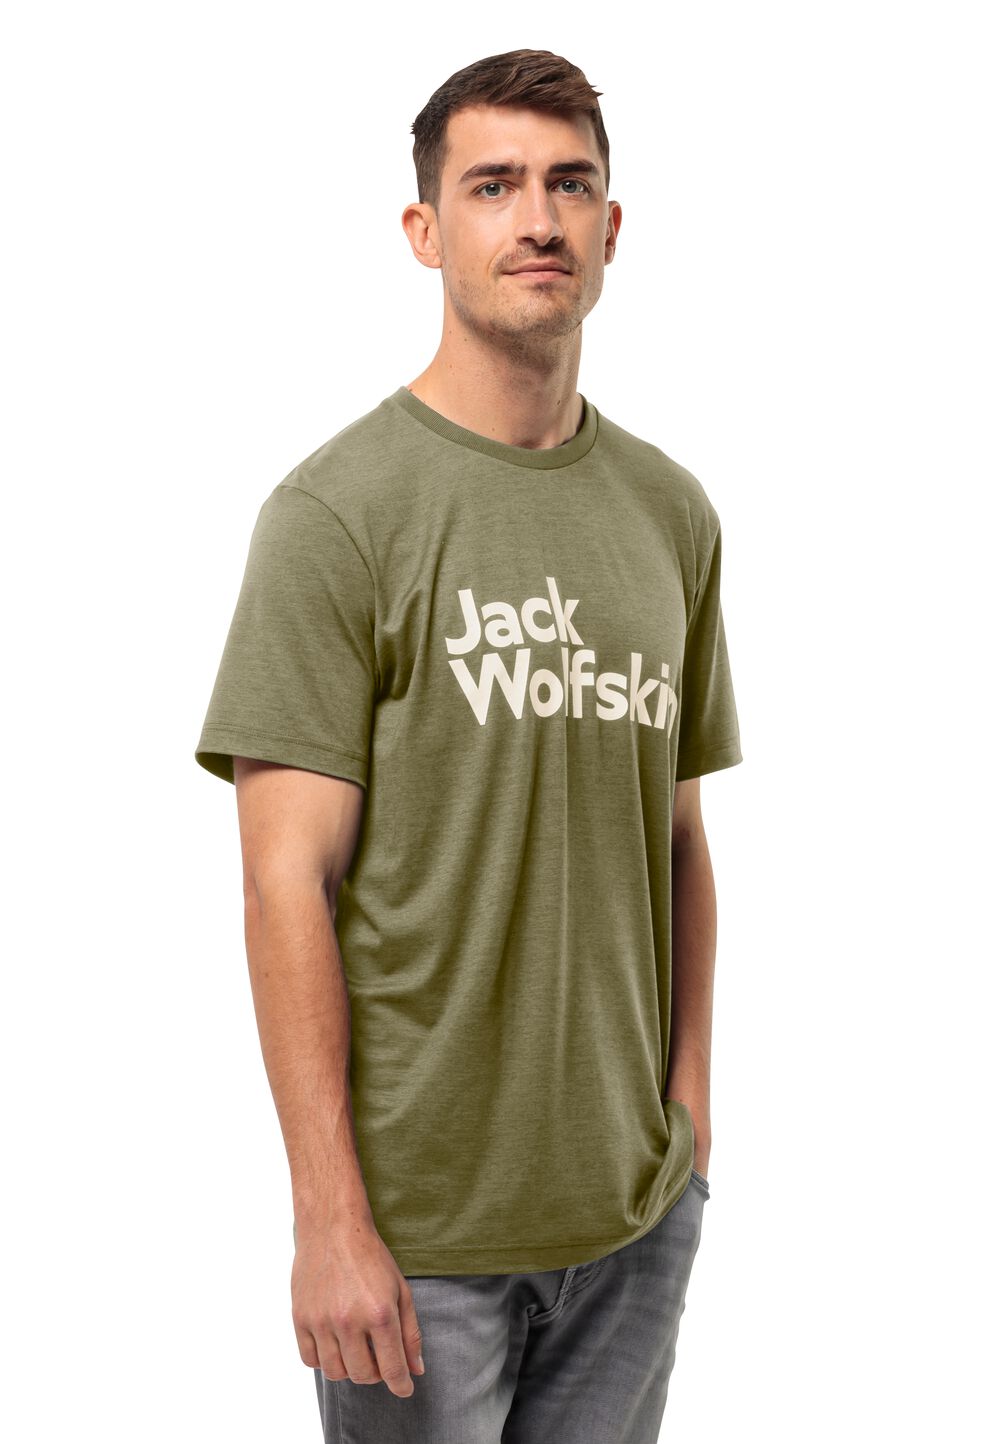 Jack Wolfskin Funktionsshirt Herren Brand T-Shirt Men XXL braun bay leaf von Jack Wolfskin